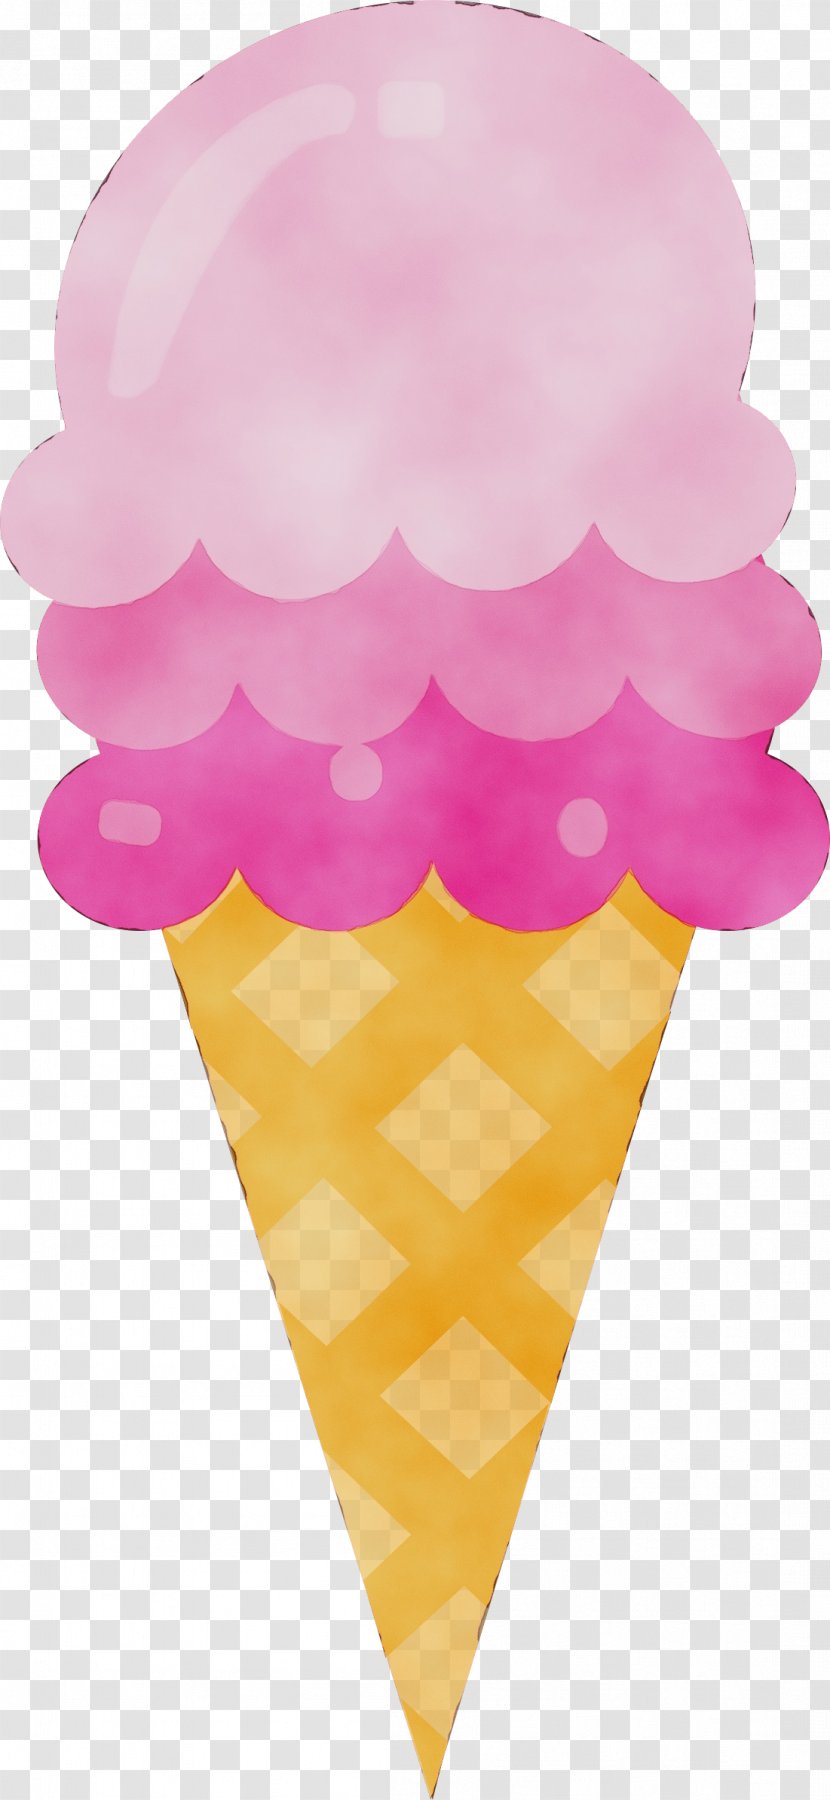 Ice Cream - Dessert - Cone Food Transparent PNG